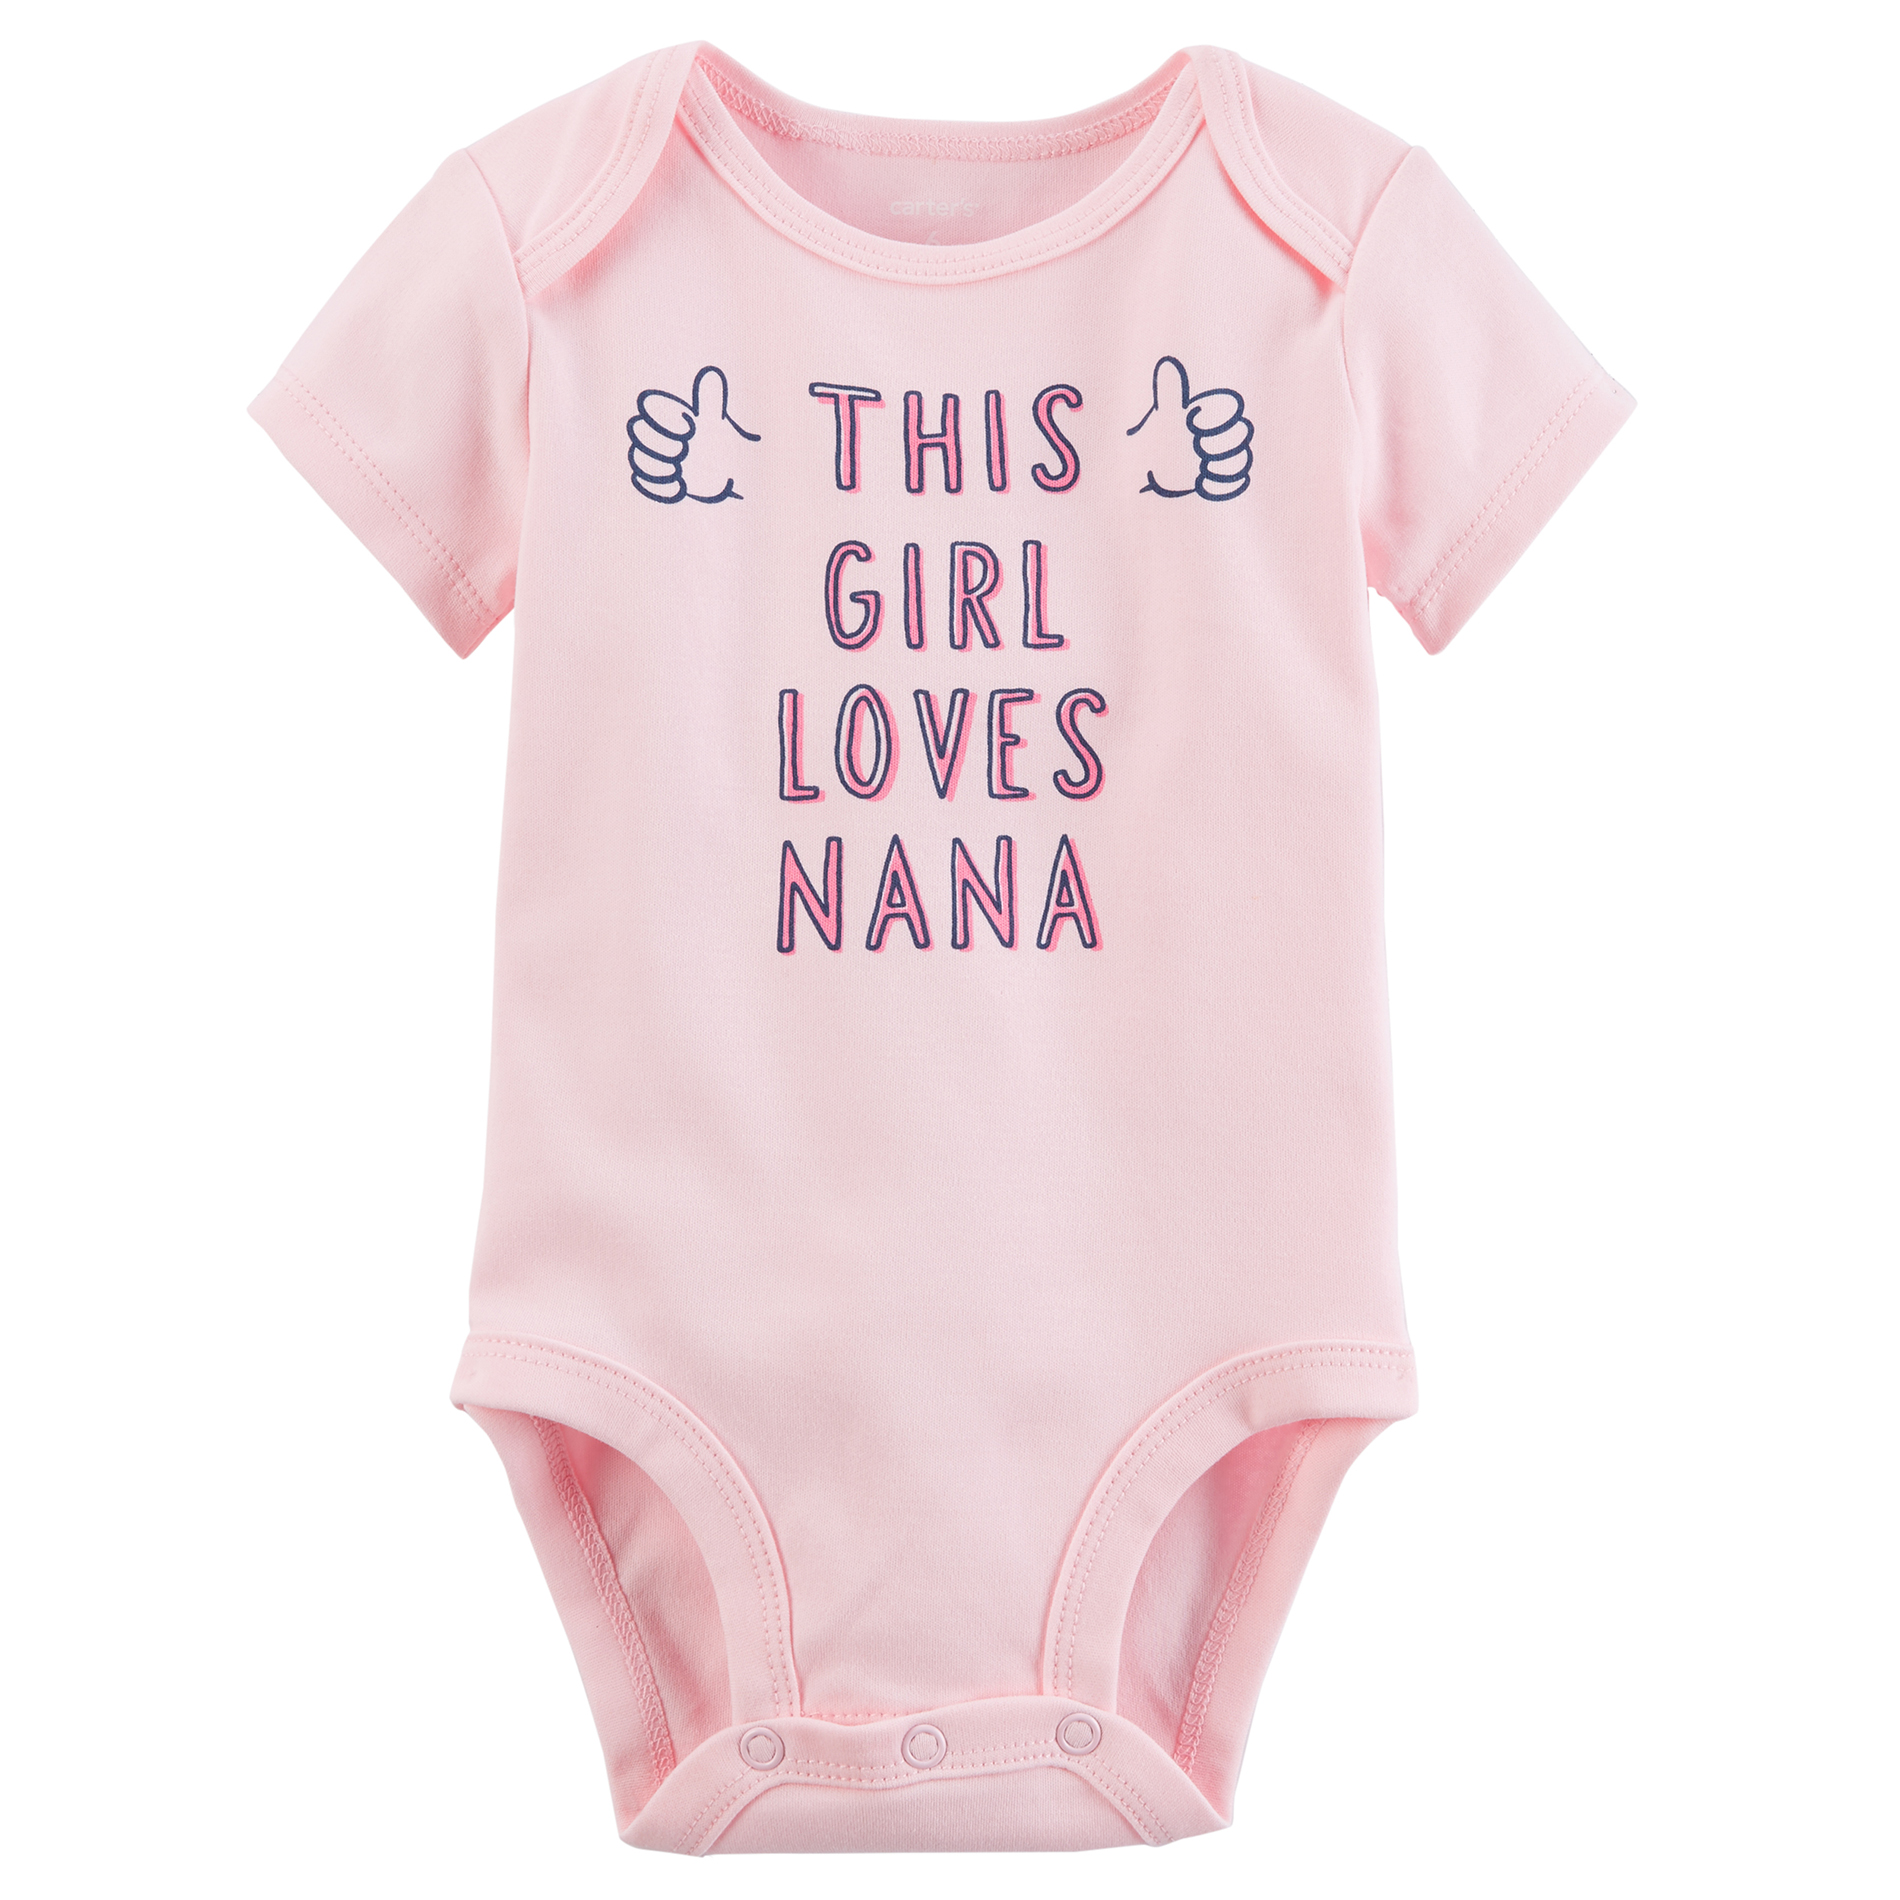 Carter's Infant Girls&#8217; Short-Sleeve Bodysuit - This Girl Loves Nana